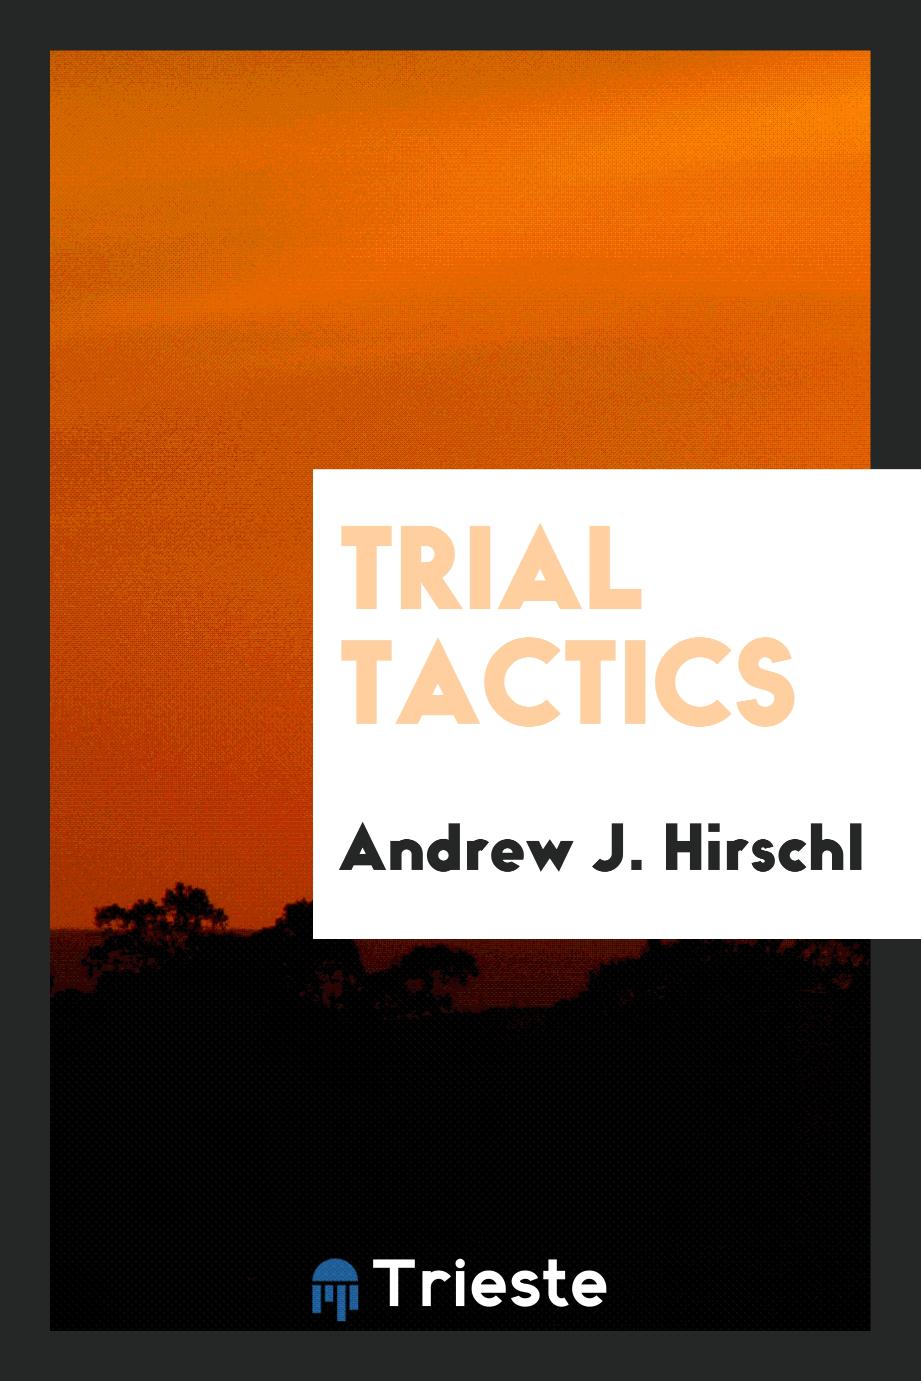 Trial tactics